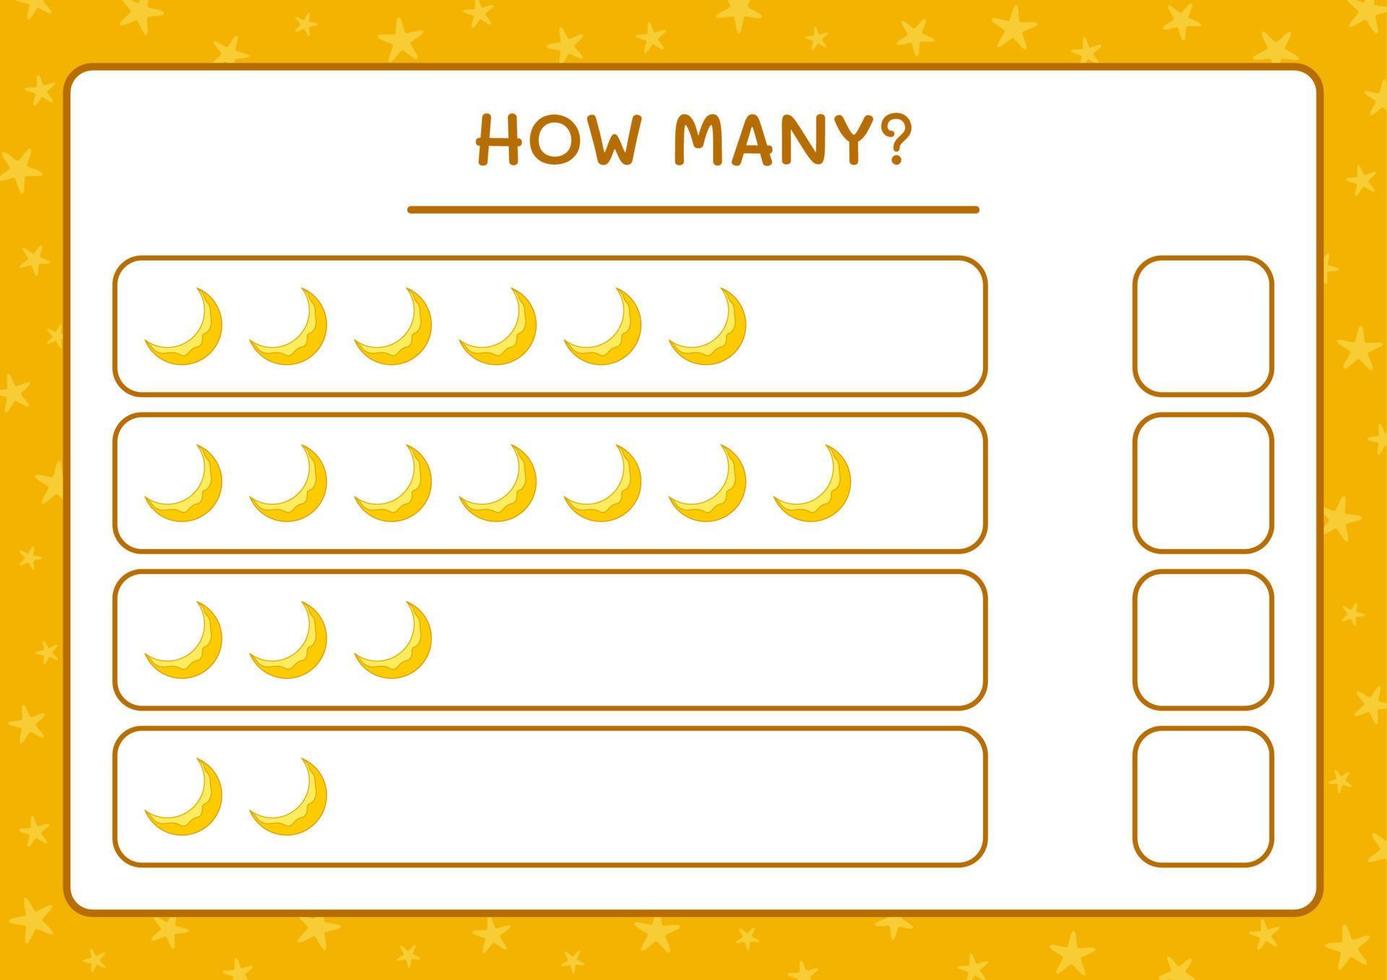 How many Moon, game for children. Vector illustration, printable worksheet